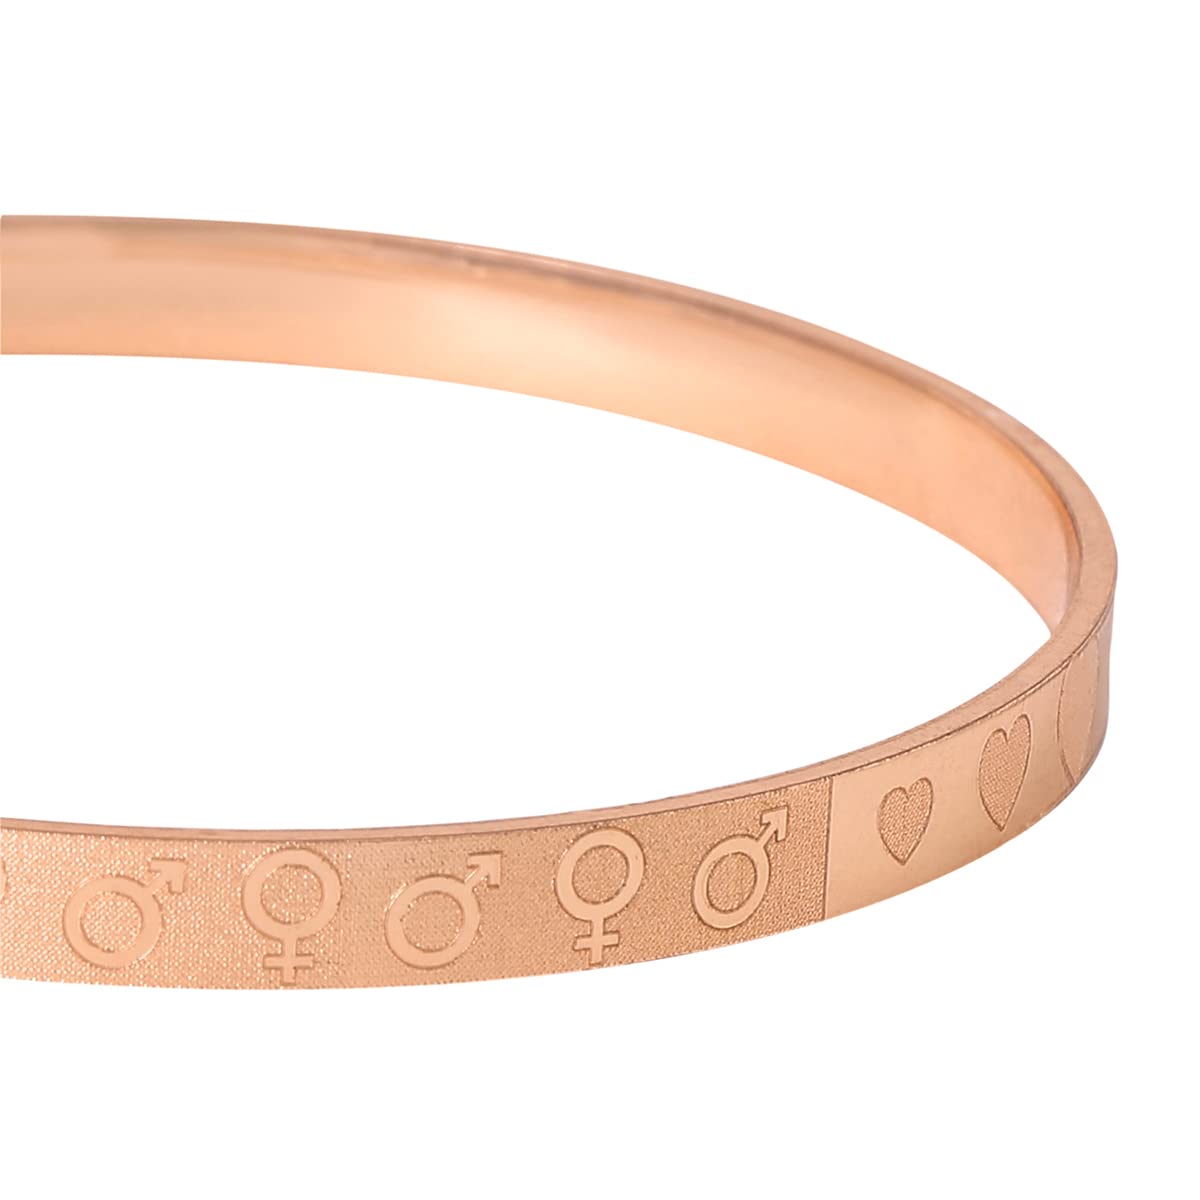 Buy Sleek rose gold bracelet Online. – Odette